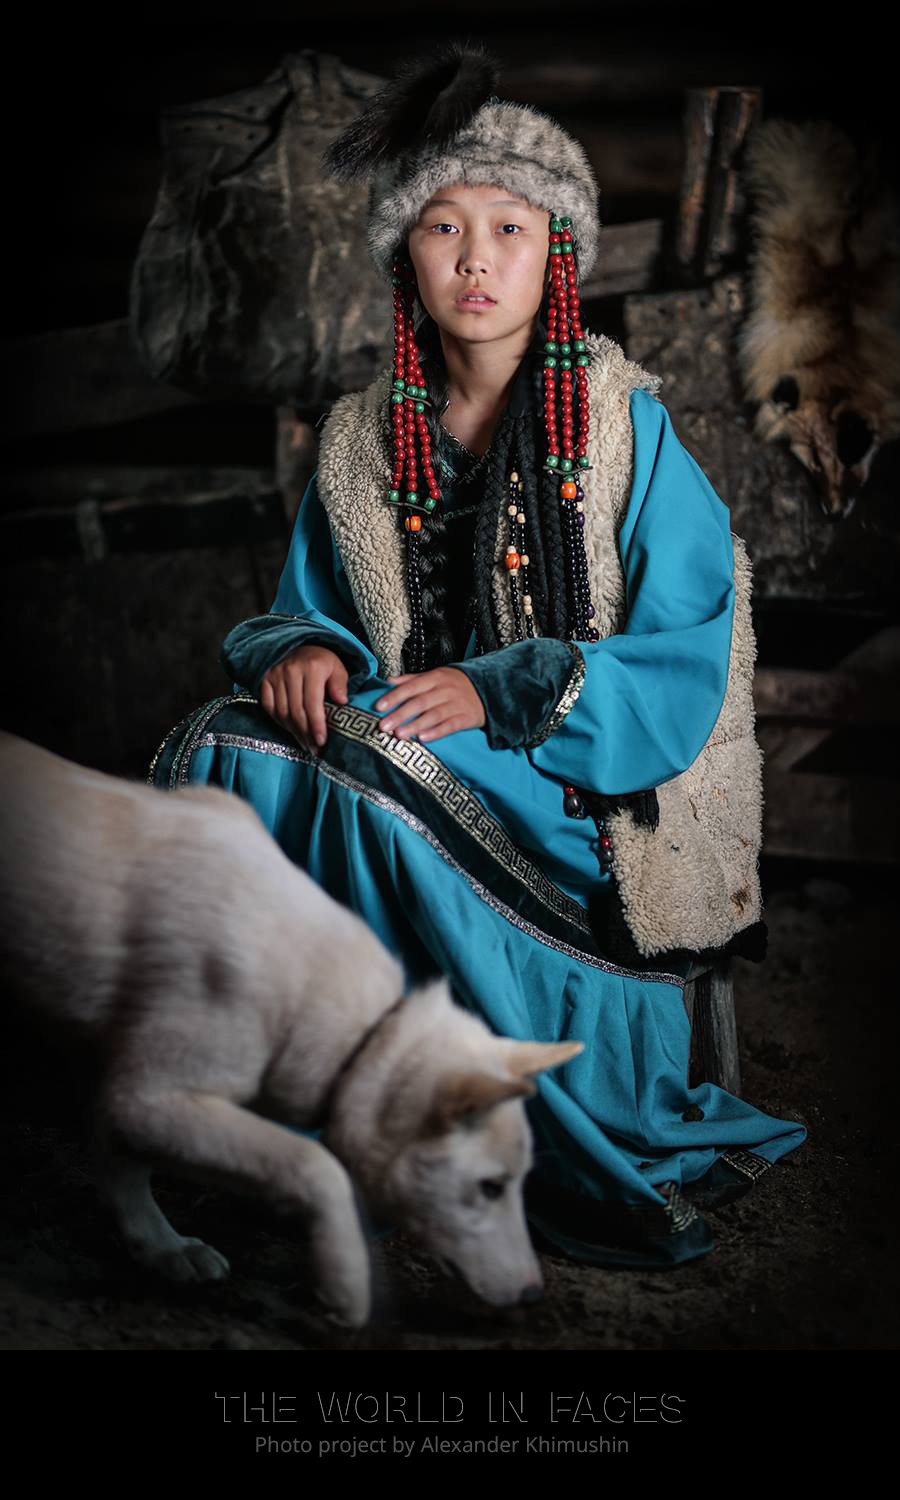 Eine junge Sojoten-Frau 

